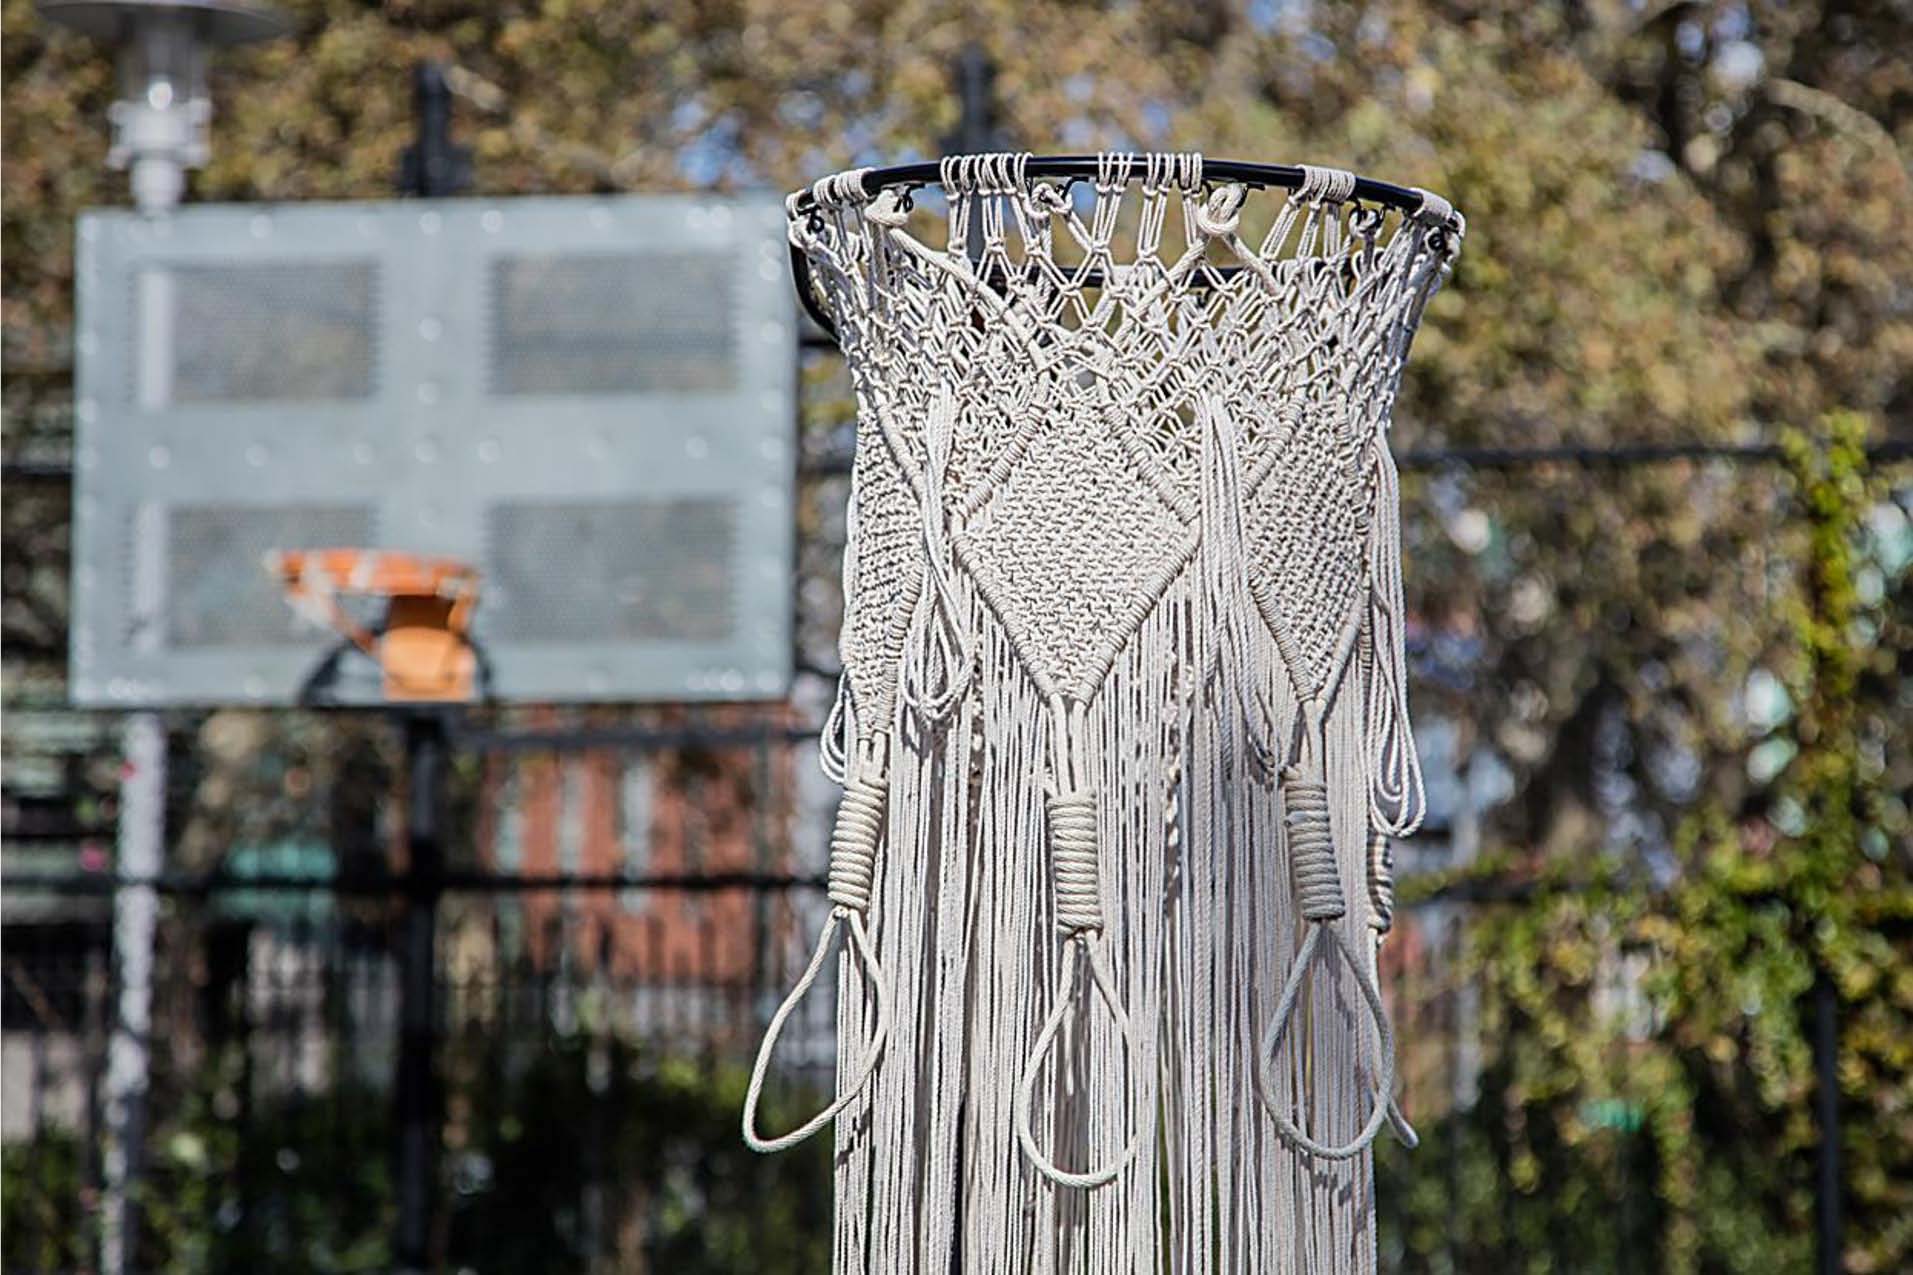 Fotografía del borde de un aro de baloncesto con una red de macramé colgando.